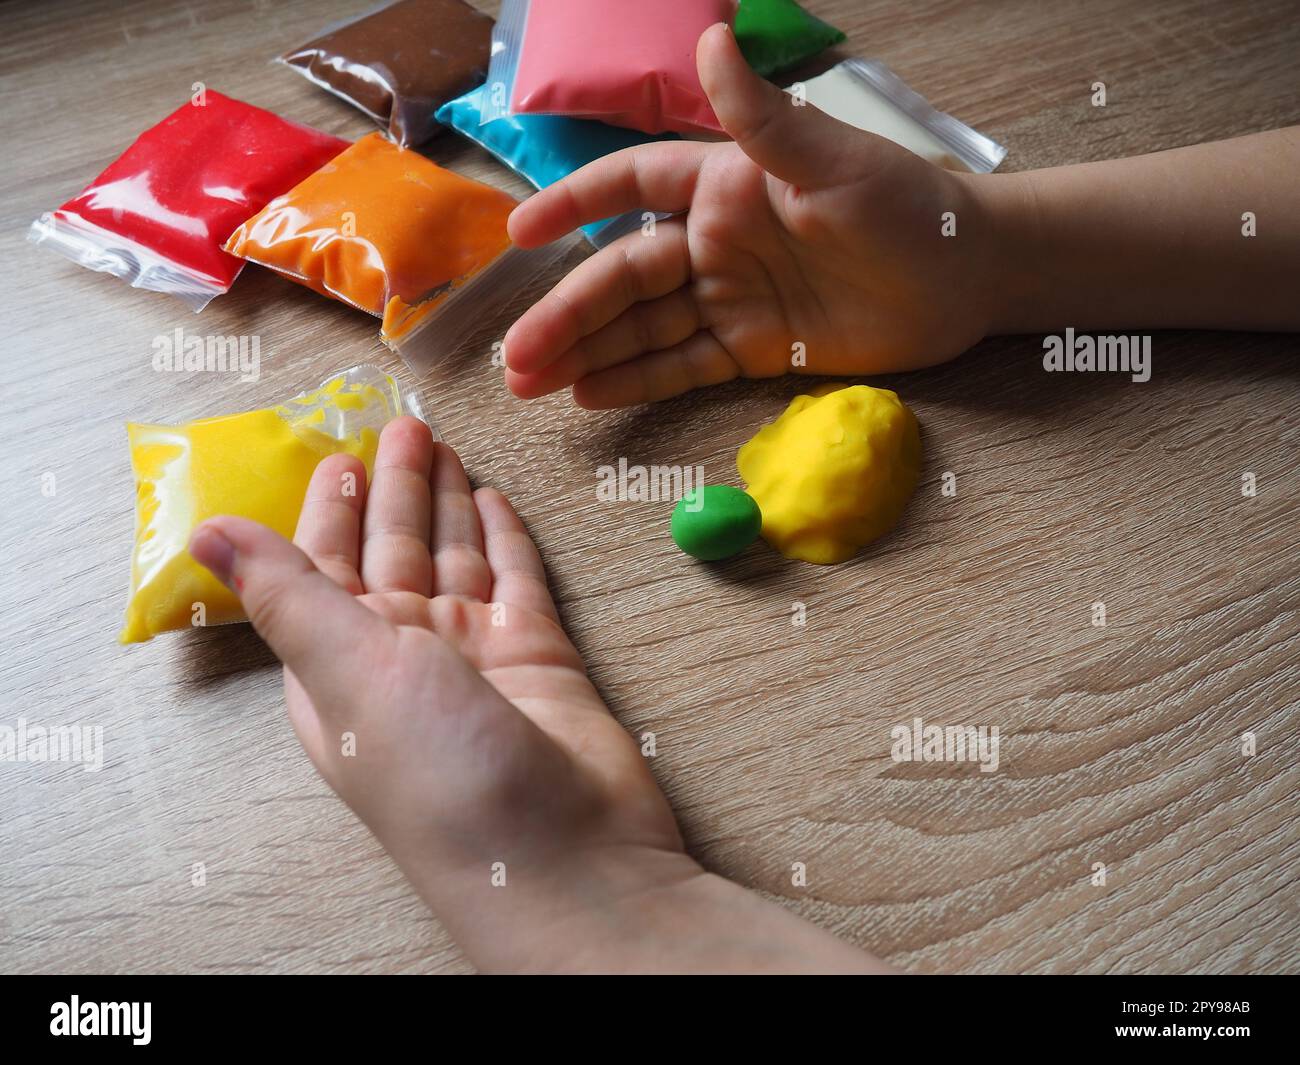 Kinderhände zerknittern weiches Plastikin. Packungen mit Plastin liegen auf dem Tisch. Kreativität zur Entwicklung der Feinmotorik der Hände. Erstellen einer Gussform oder eines Modells aus Plasticine Stockfoto